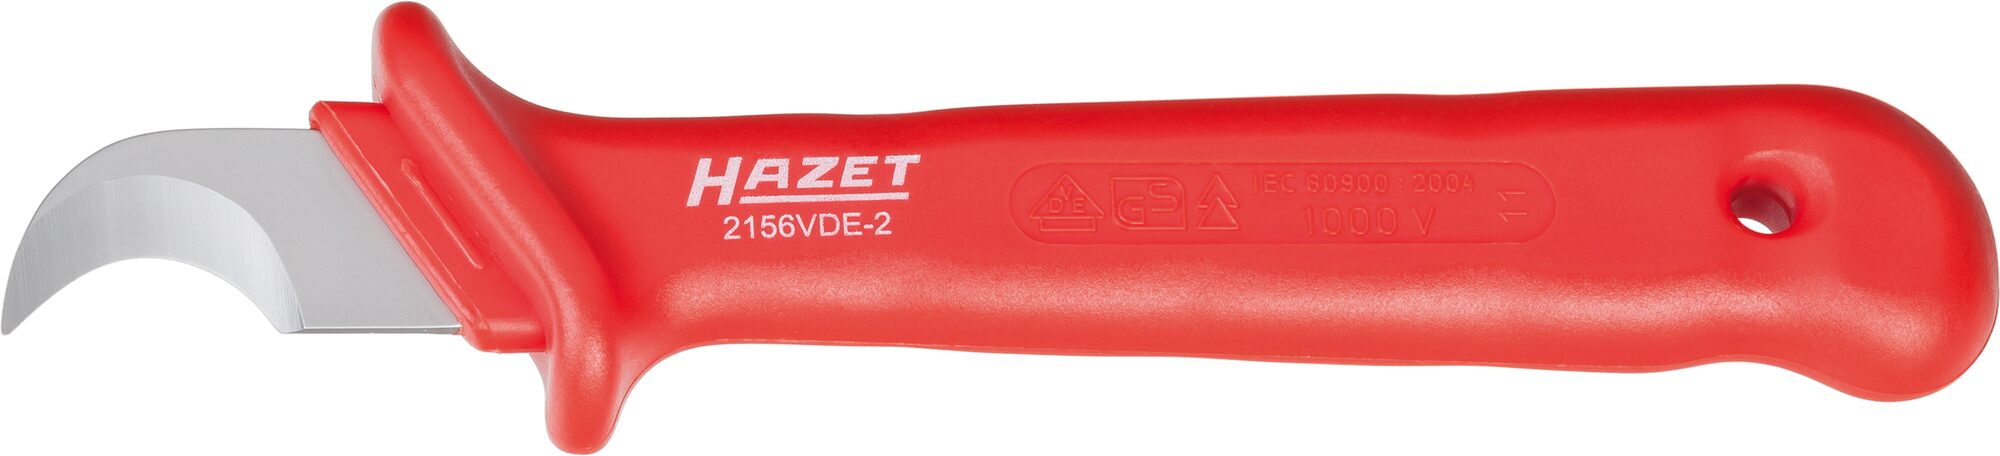 HAZET Kabel- und Abisoliermesser ∙ schutzisoliert 2156VDE-2